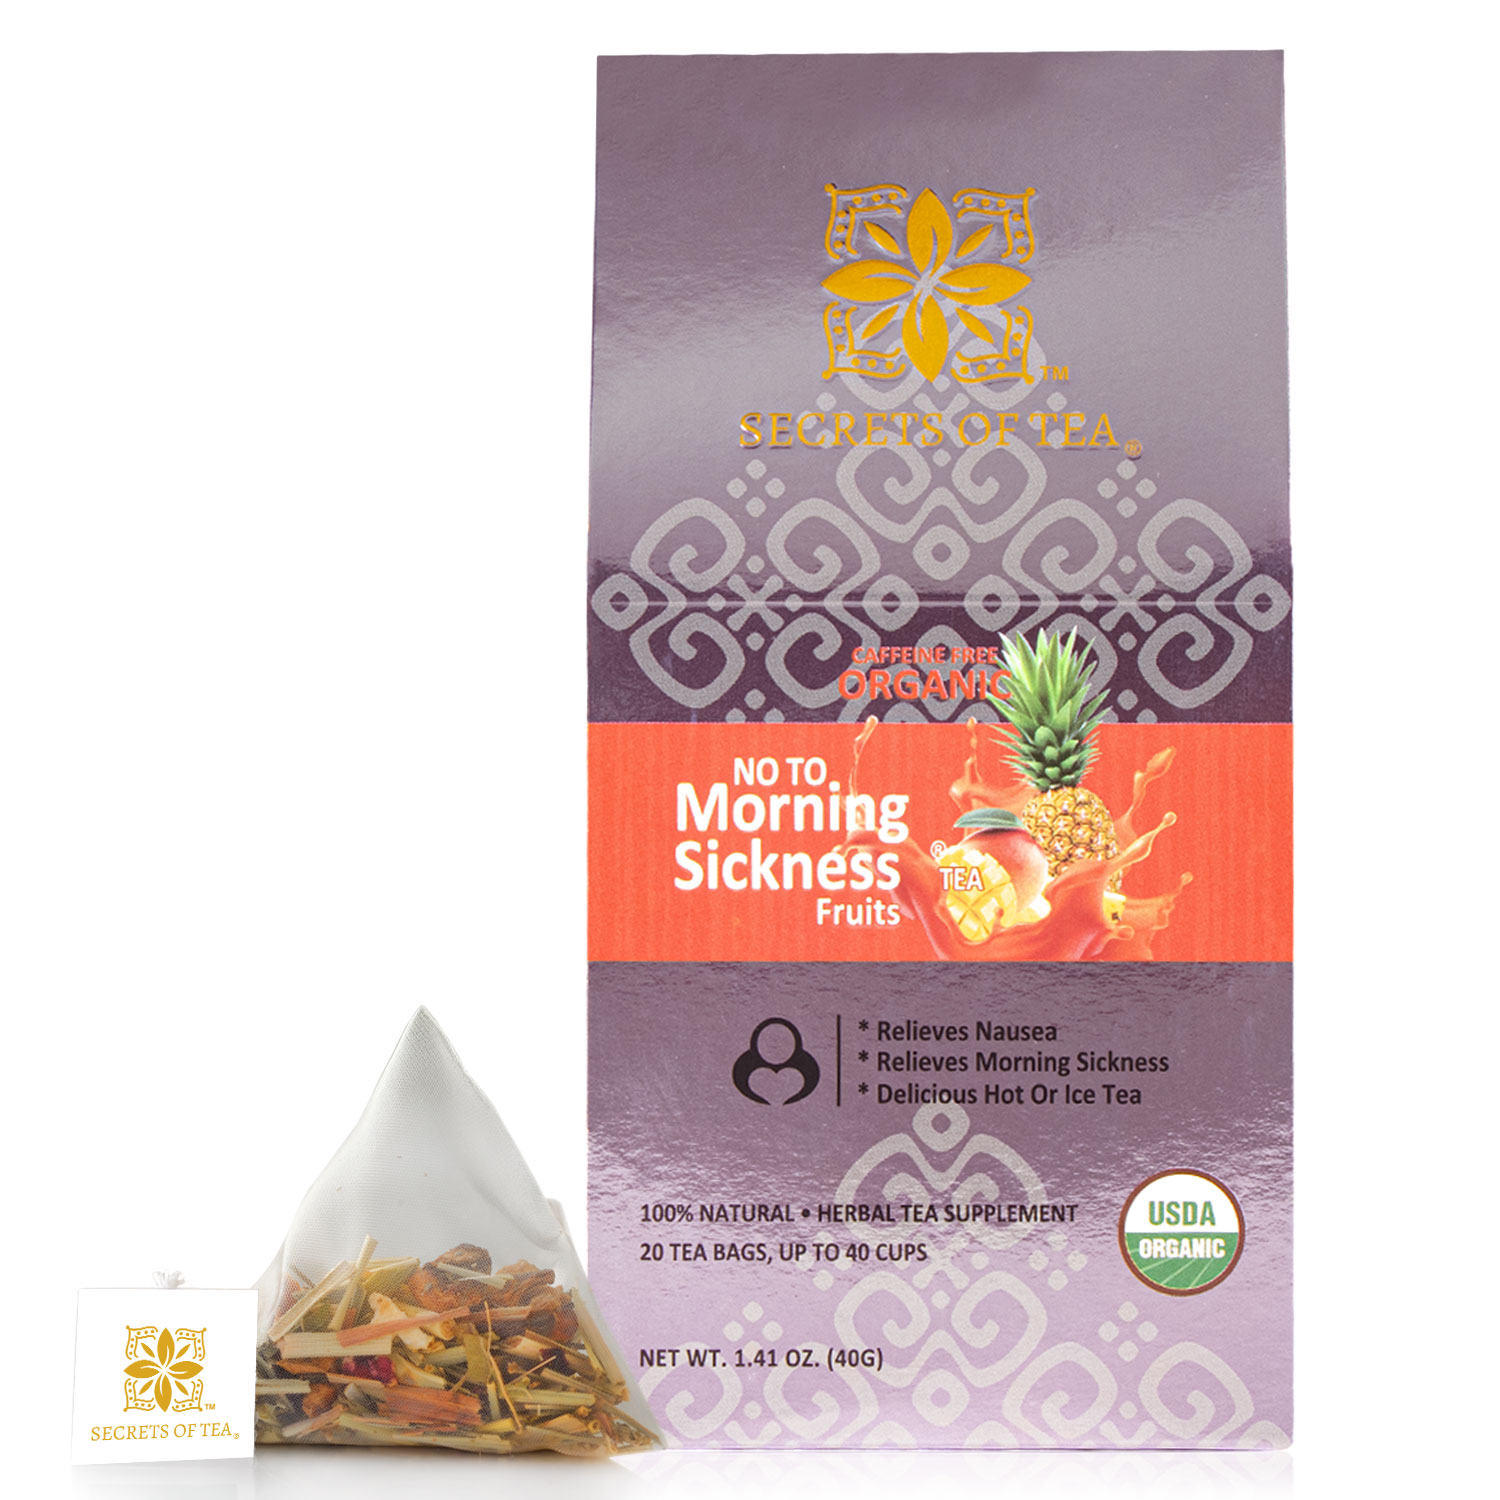 Secrets of Tea No-to-Morning-Sickness Fruits Tea 2 innerpacks per case 2.0 oz